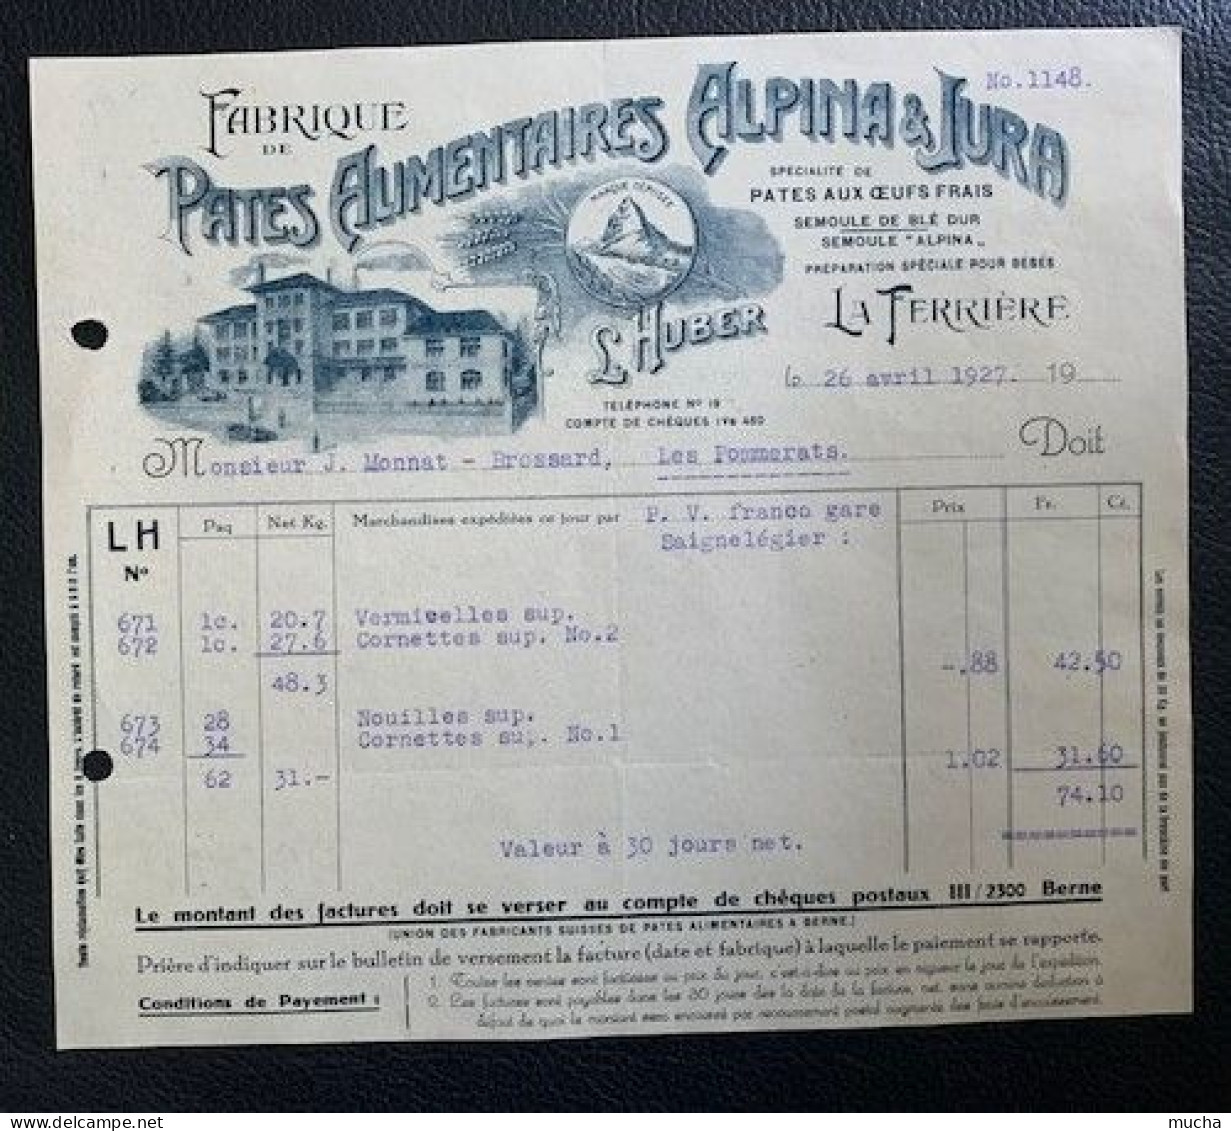 70148 - Facture Illustrée Pates Alimentaires Alpina & Jura La Ferrière 26.04.1922 - Zwitserland